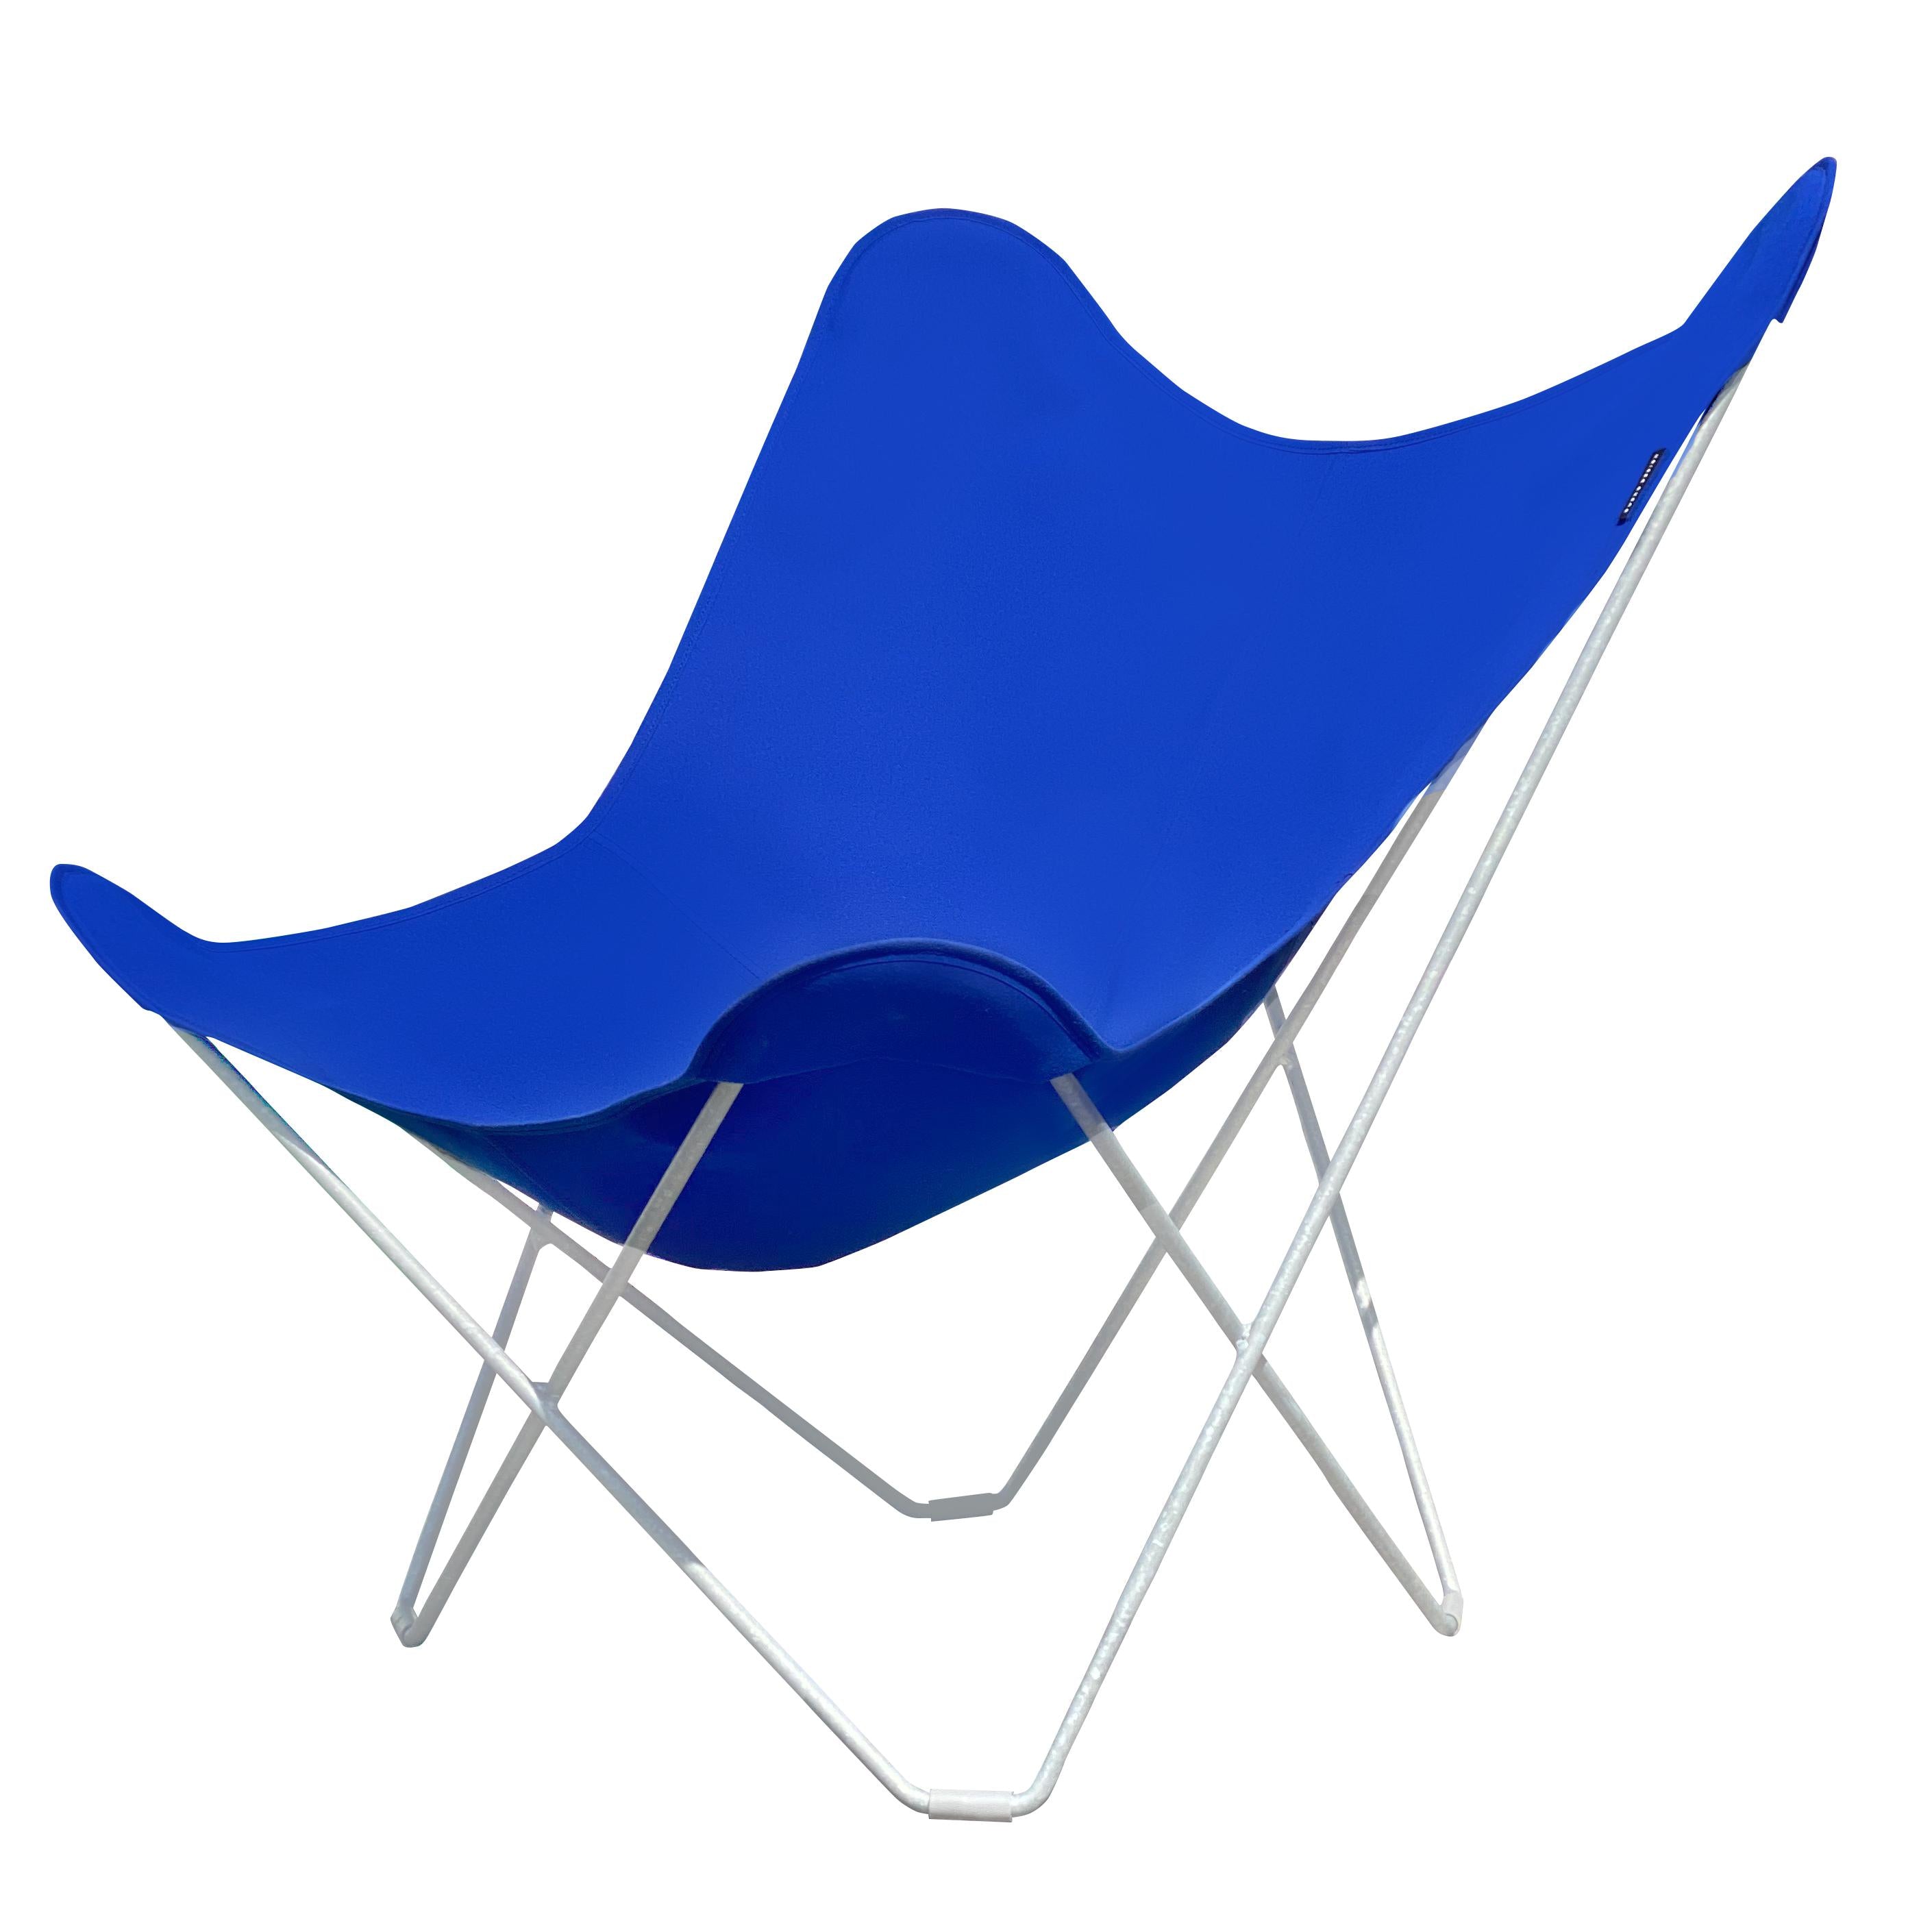 Cuero Sunshine Mariposa Butterfly krzesło, Atlantic Blue/Grey Outdoor Rame